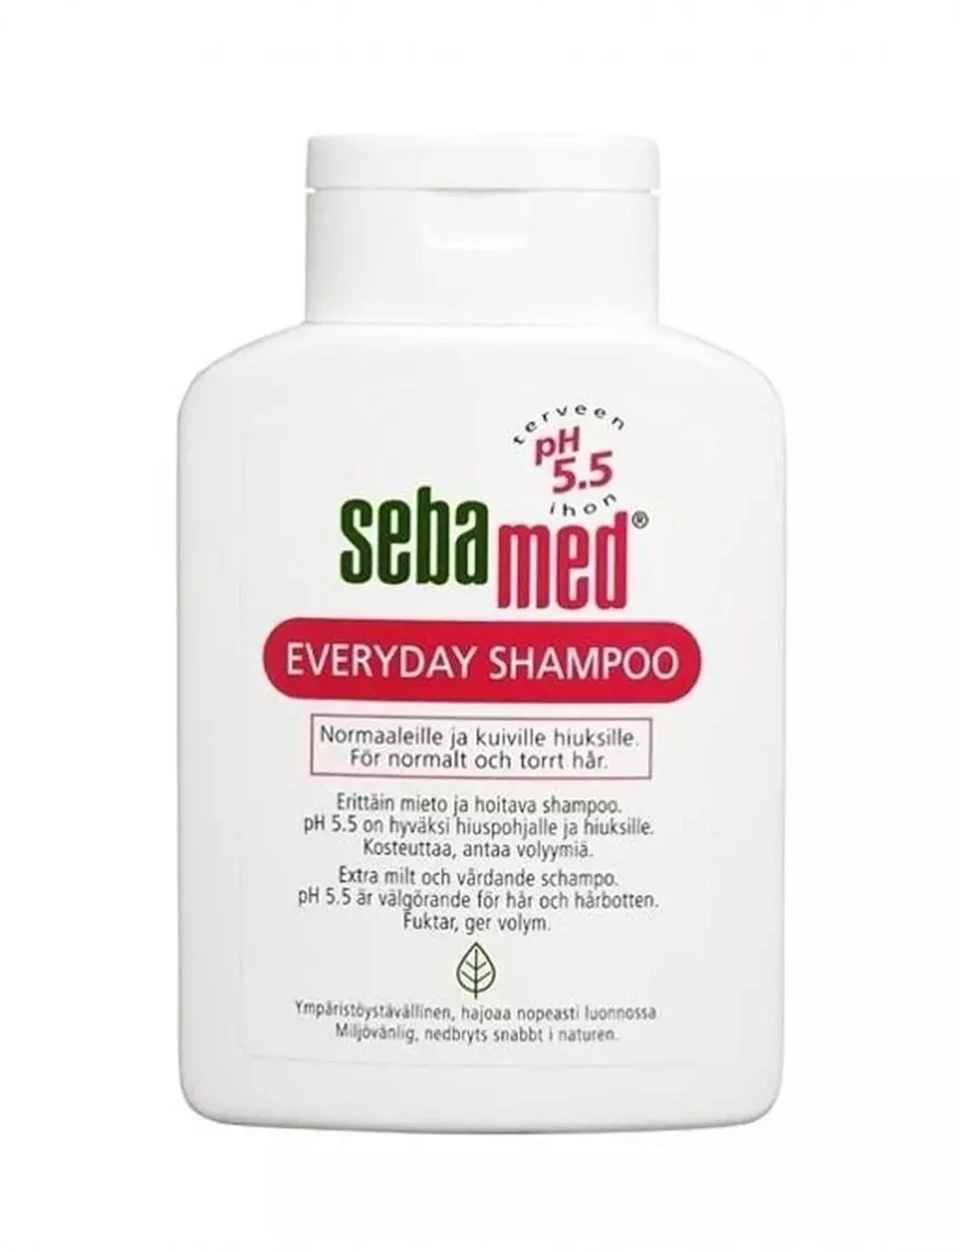 Sebamed Everday Shampoo 400ml